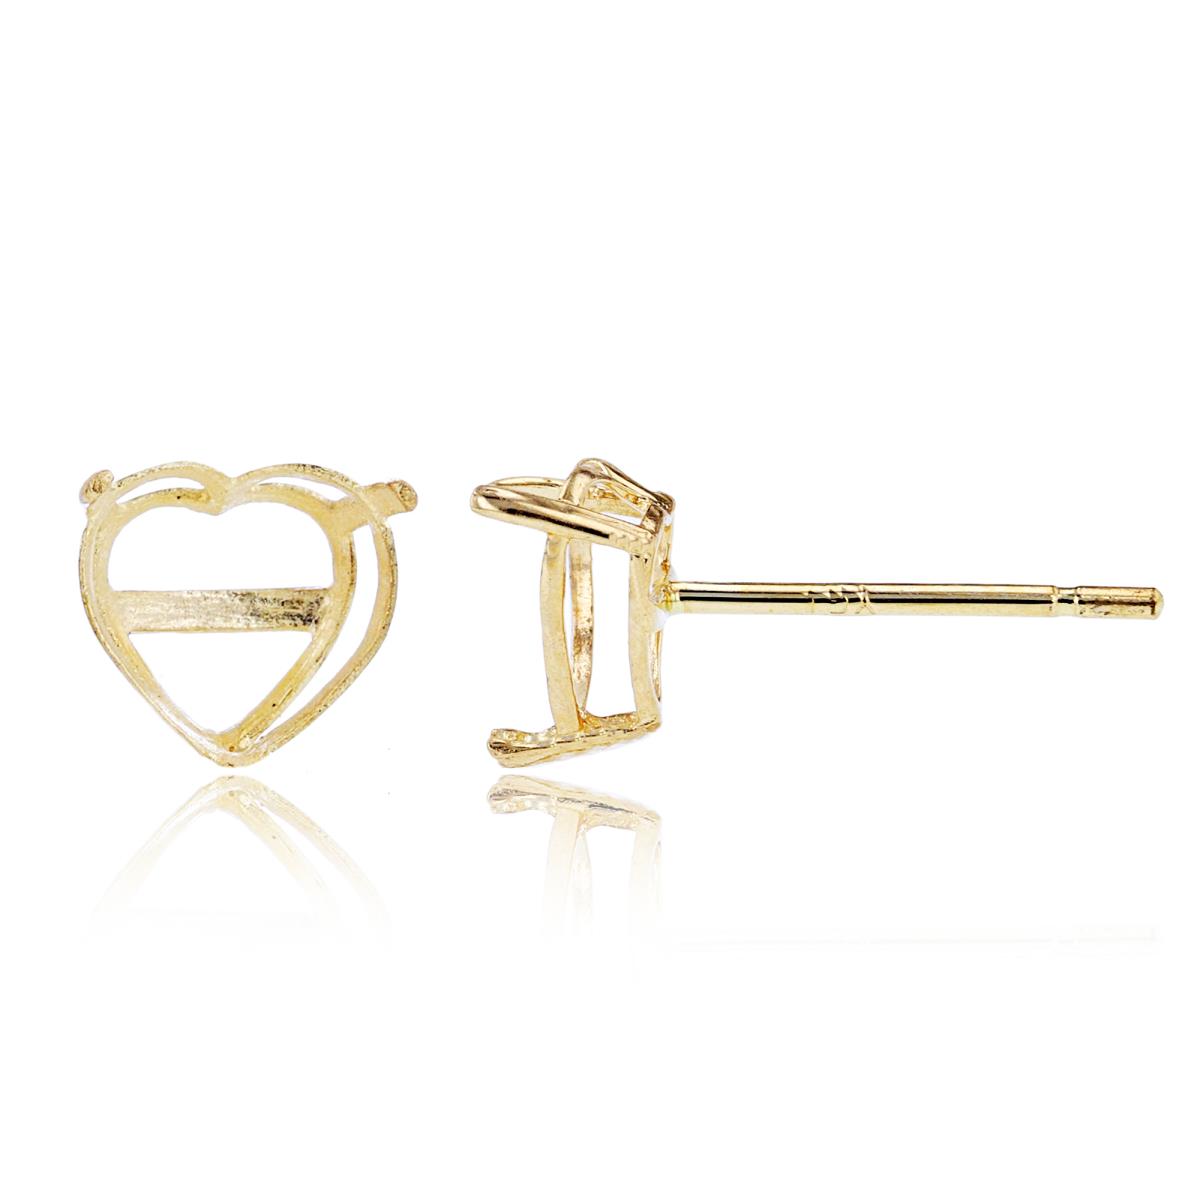 14K Yellow Gold 5mm Heart Basket Stud Earring Finding (PR)